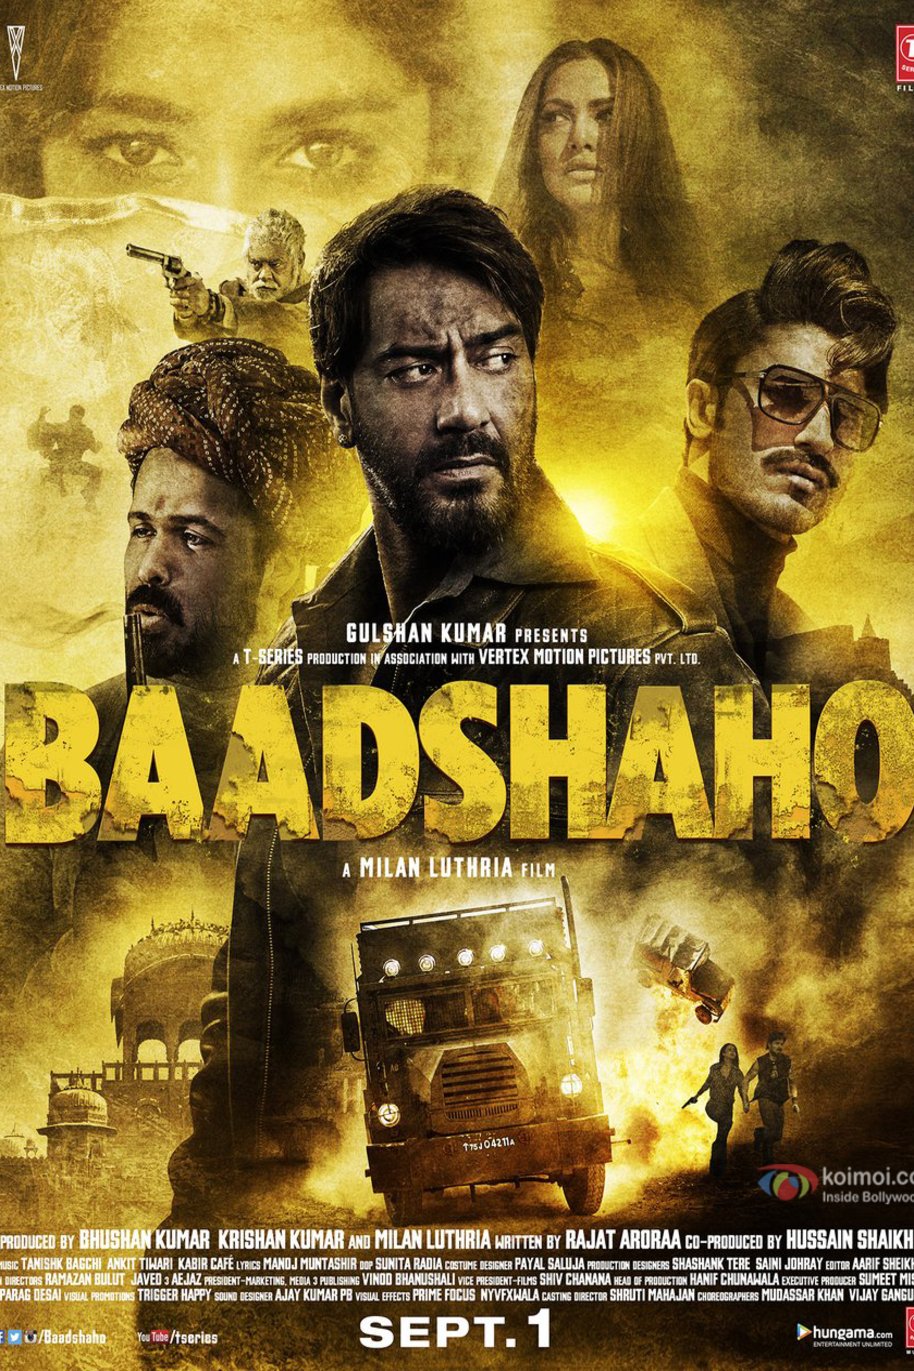 Hindi poster of the movie Baadshaho